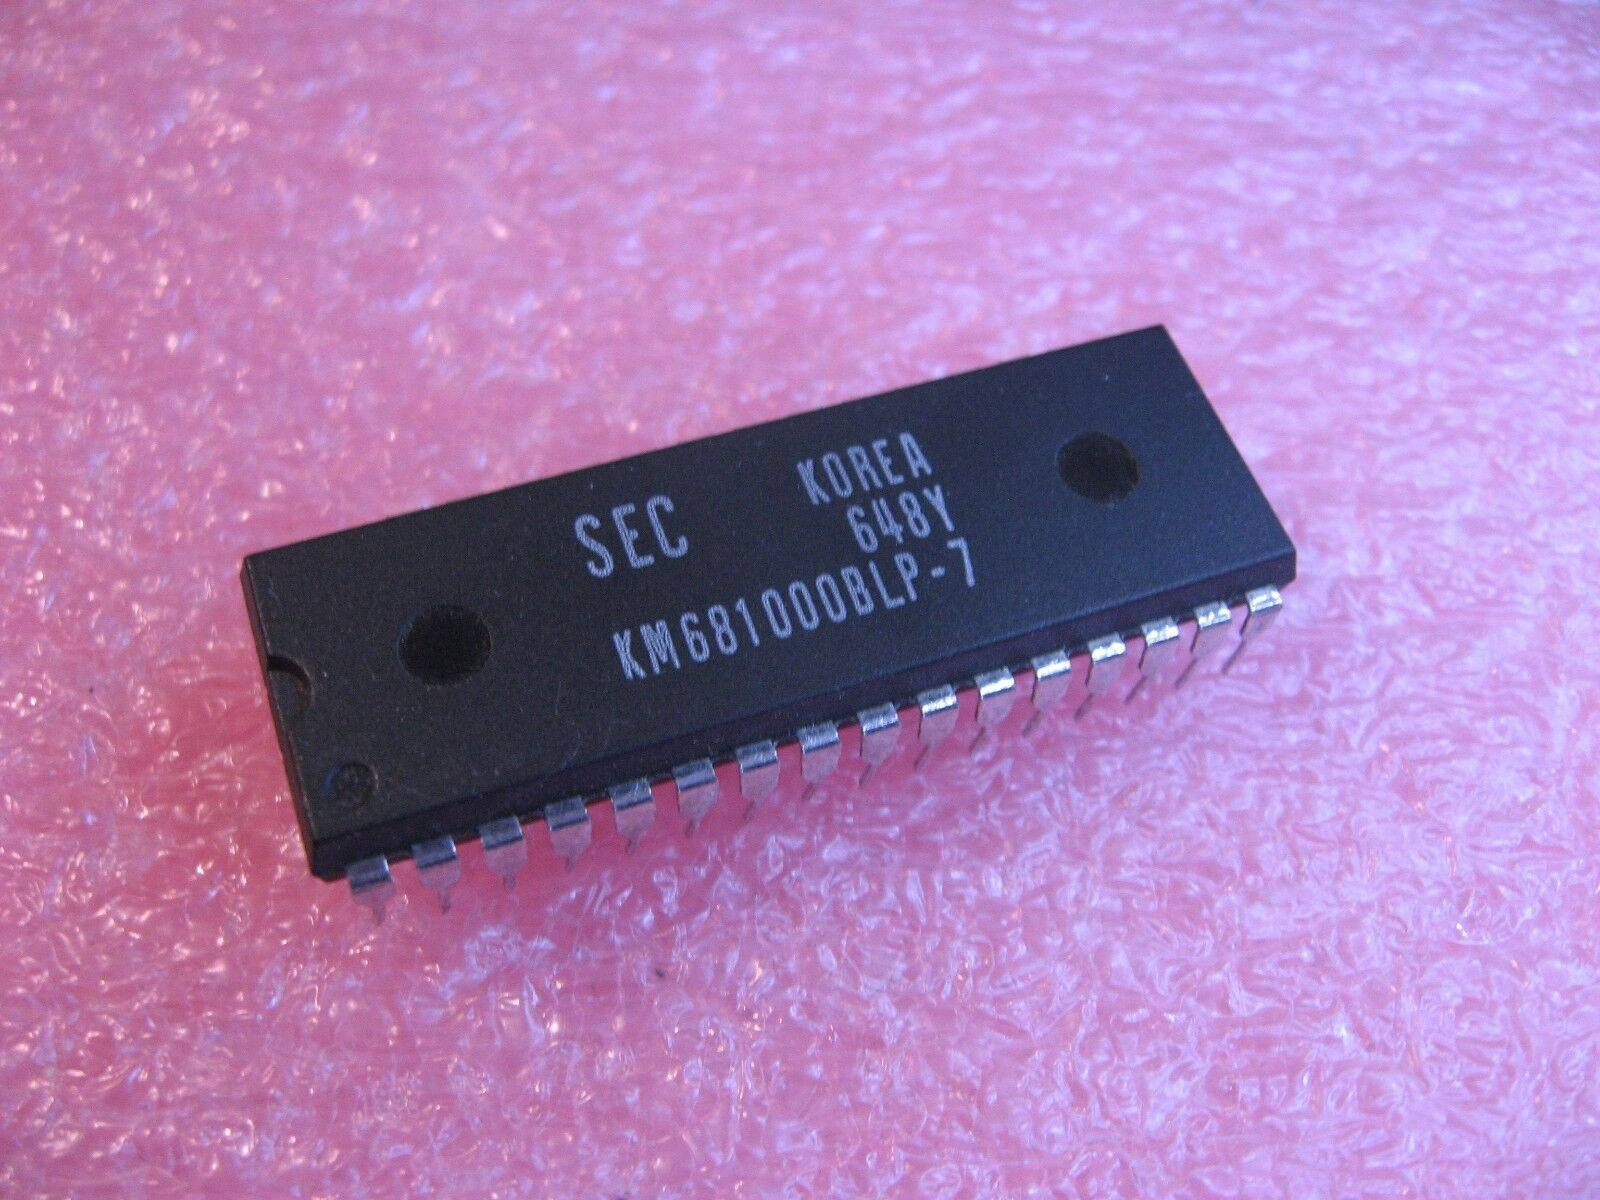 KM681000BLP-7 SEC Static RAM 128x8 IC - NOS Qty 1 